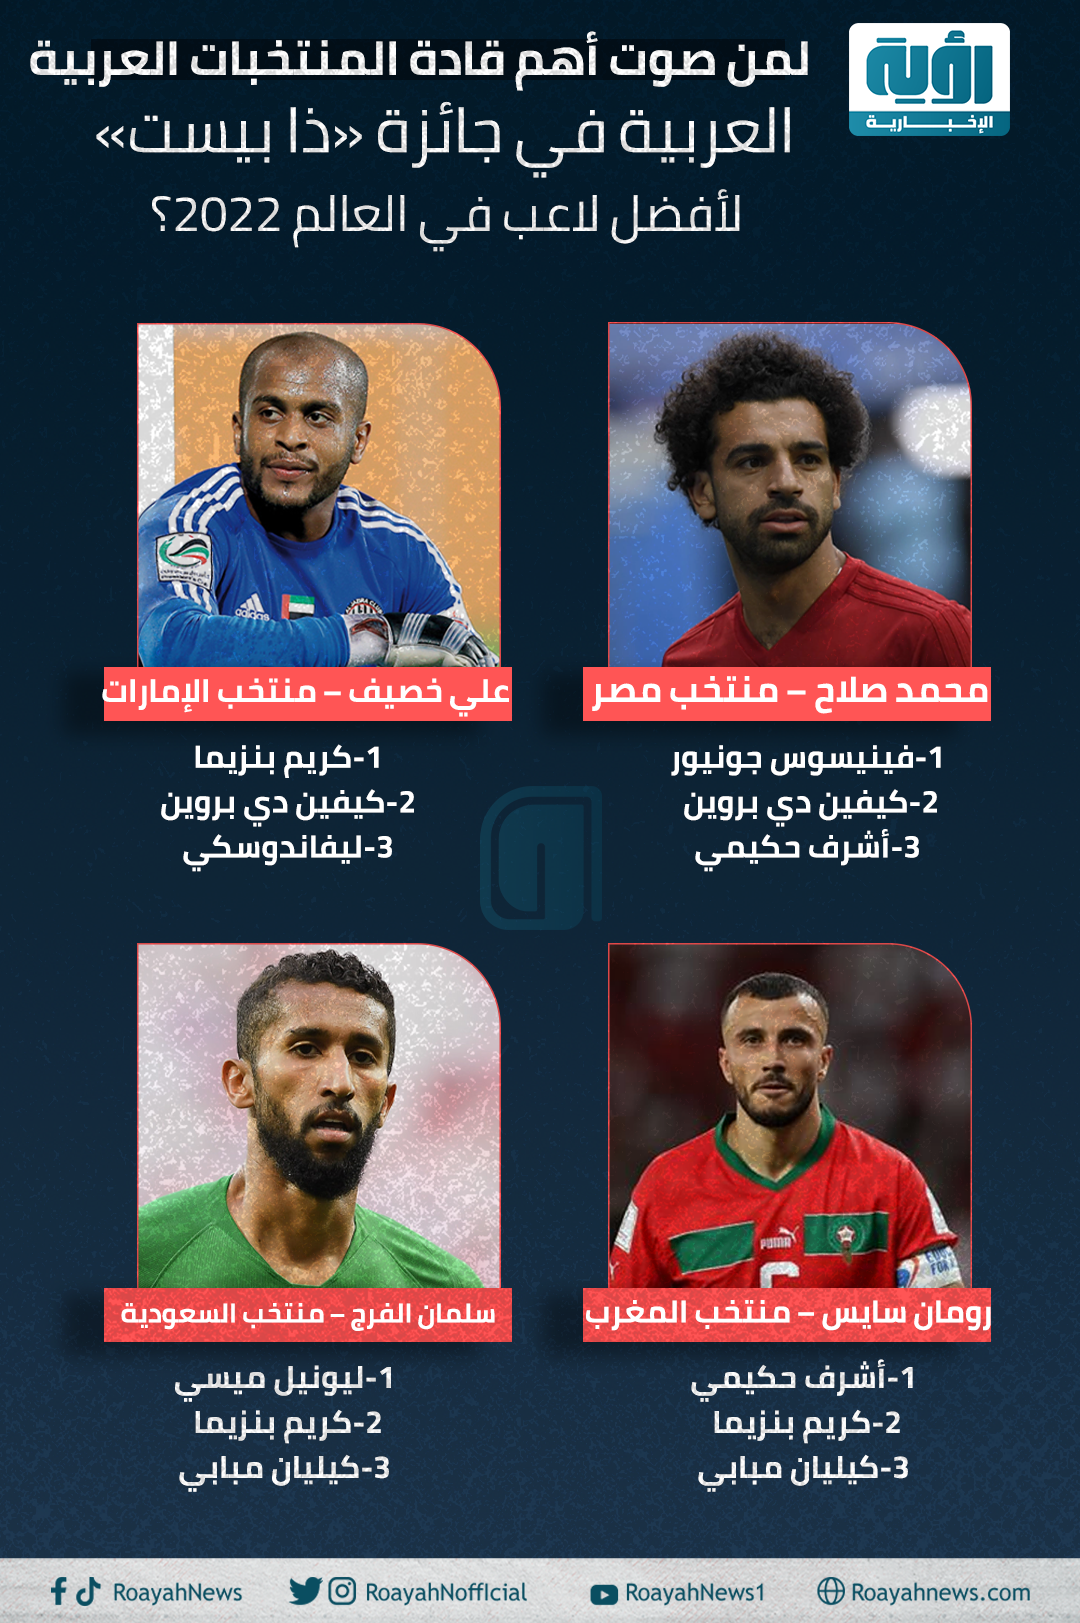 لمن صوت أهم قادة المنتخبات العربية في جائزة «ذا بيست» لأفضل لاعب في العالم 2022؟